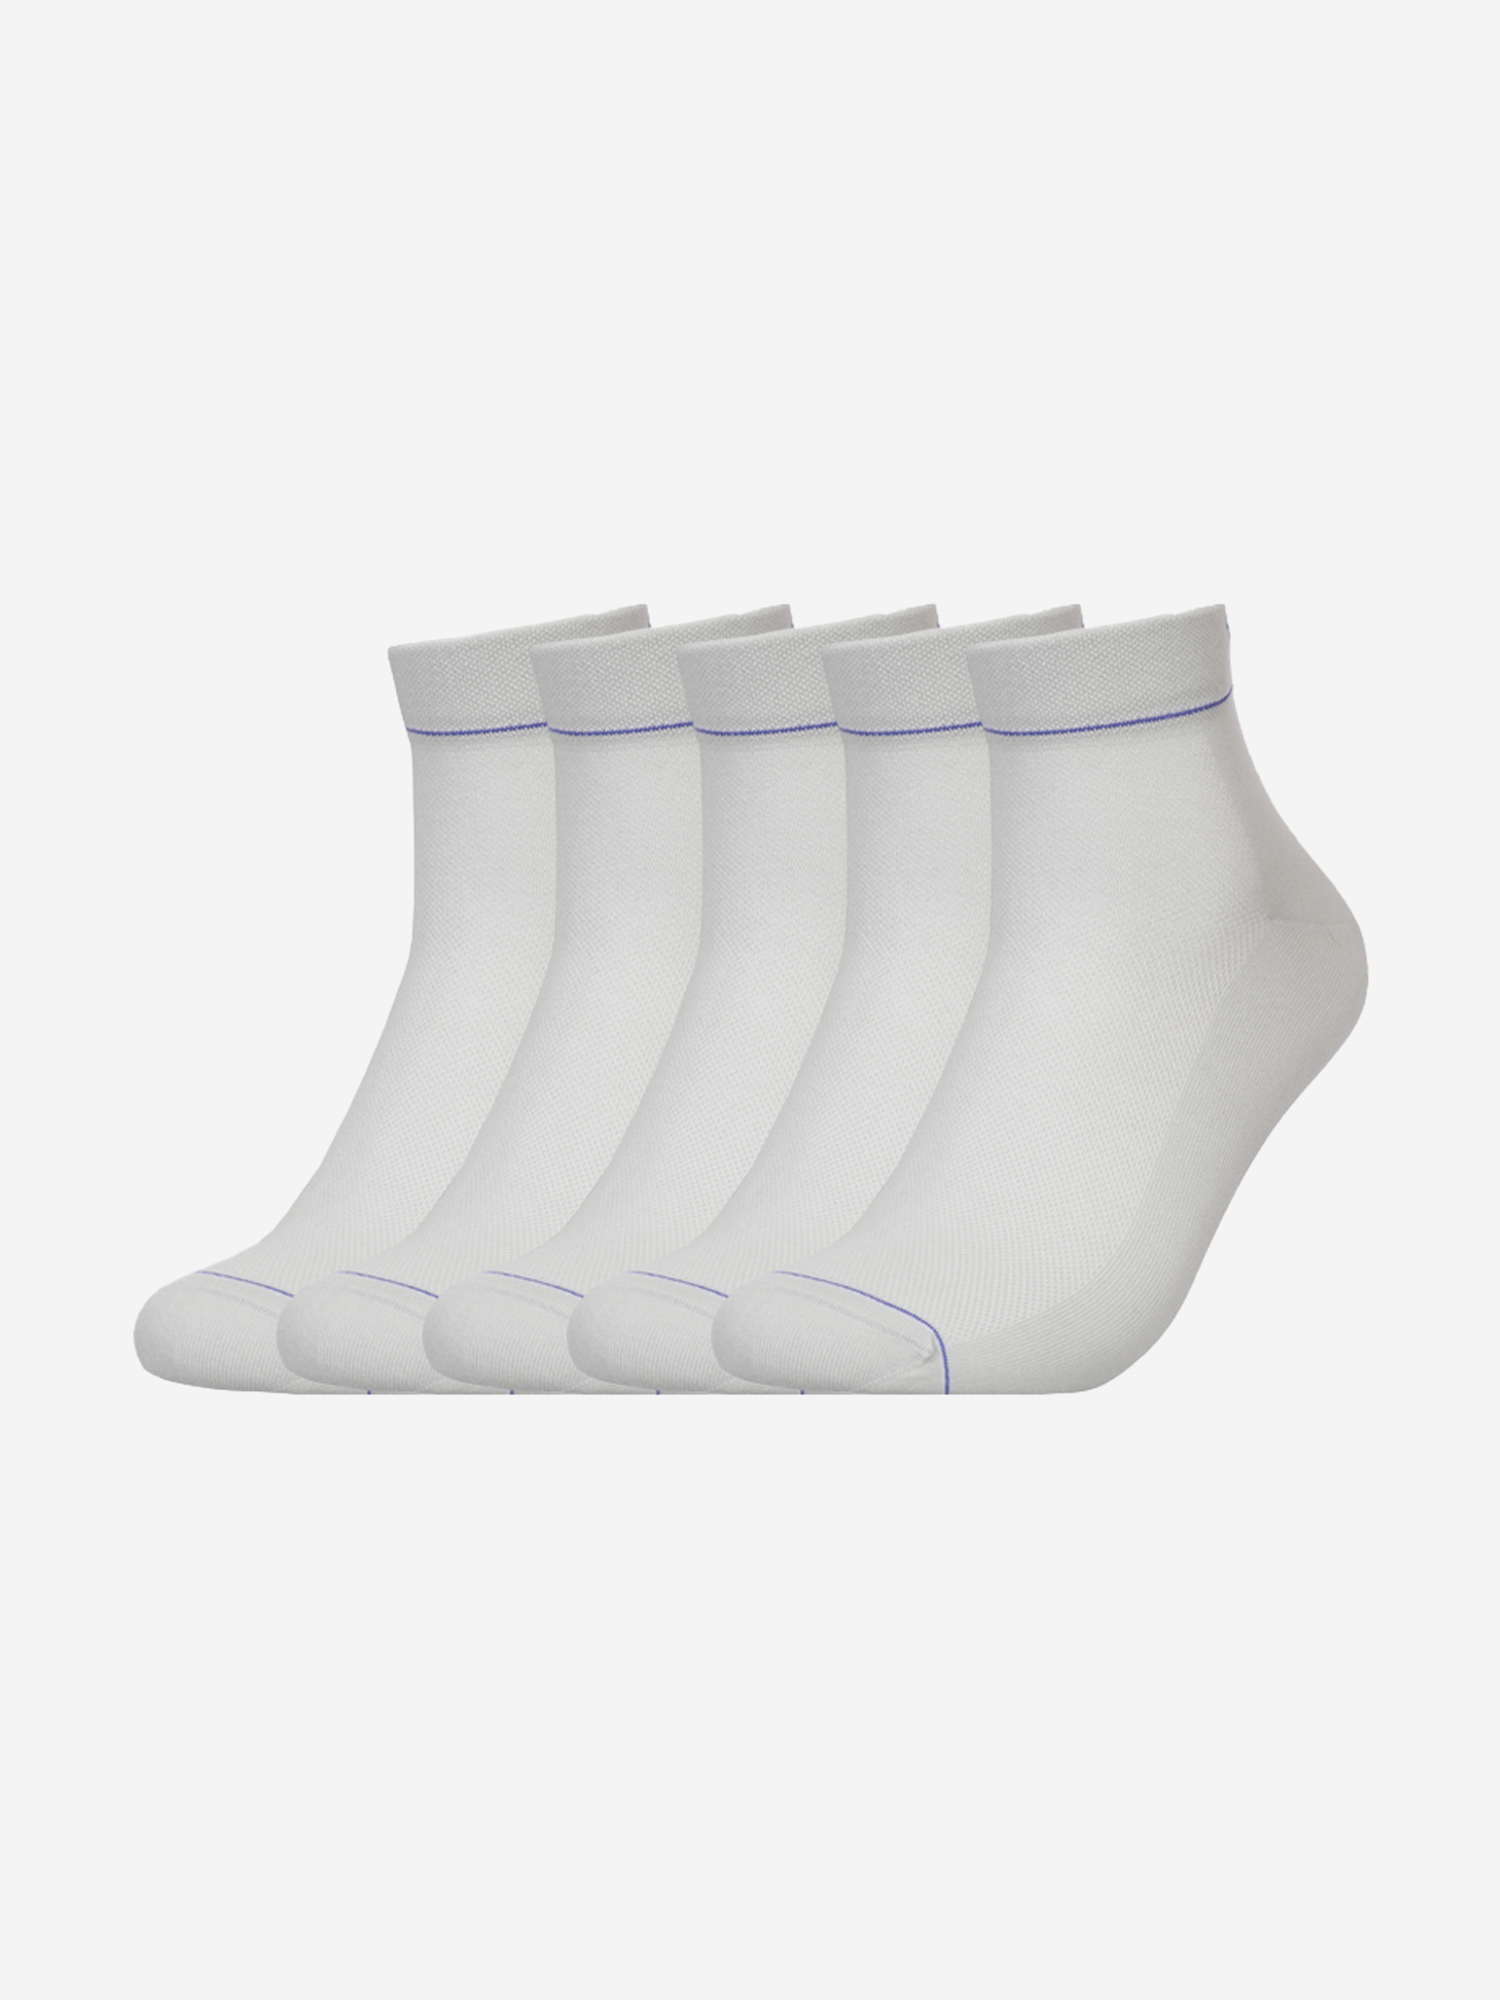 Комплект носков Tezido короткие 5 пар, Белый